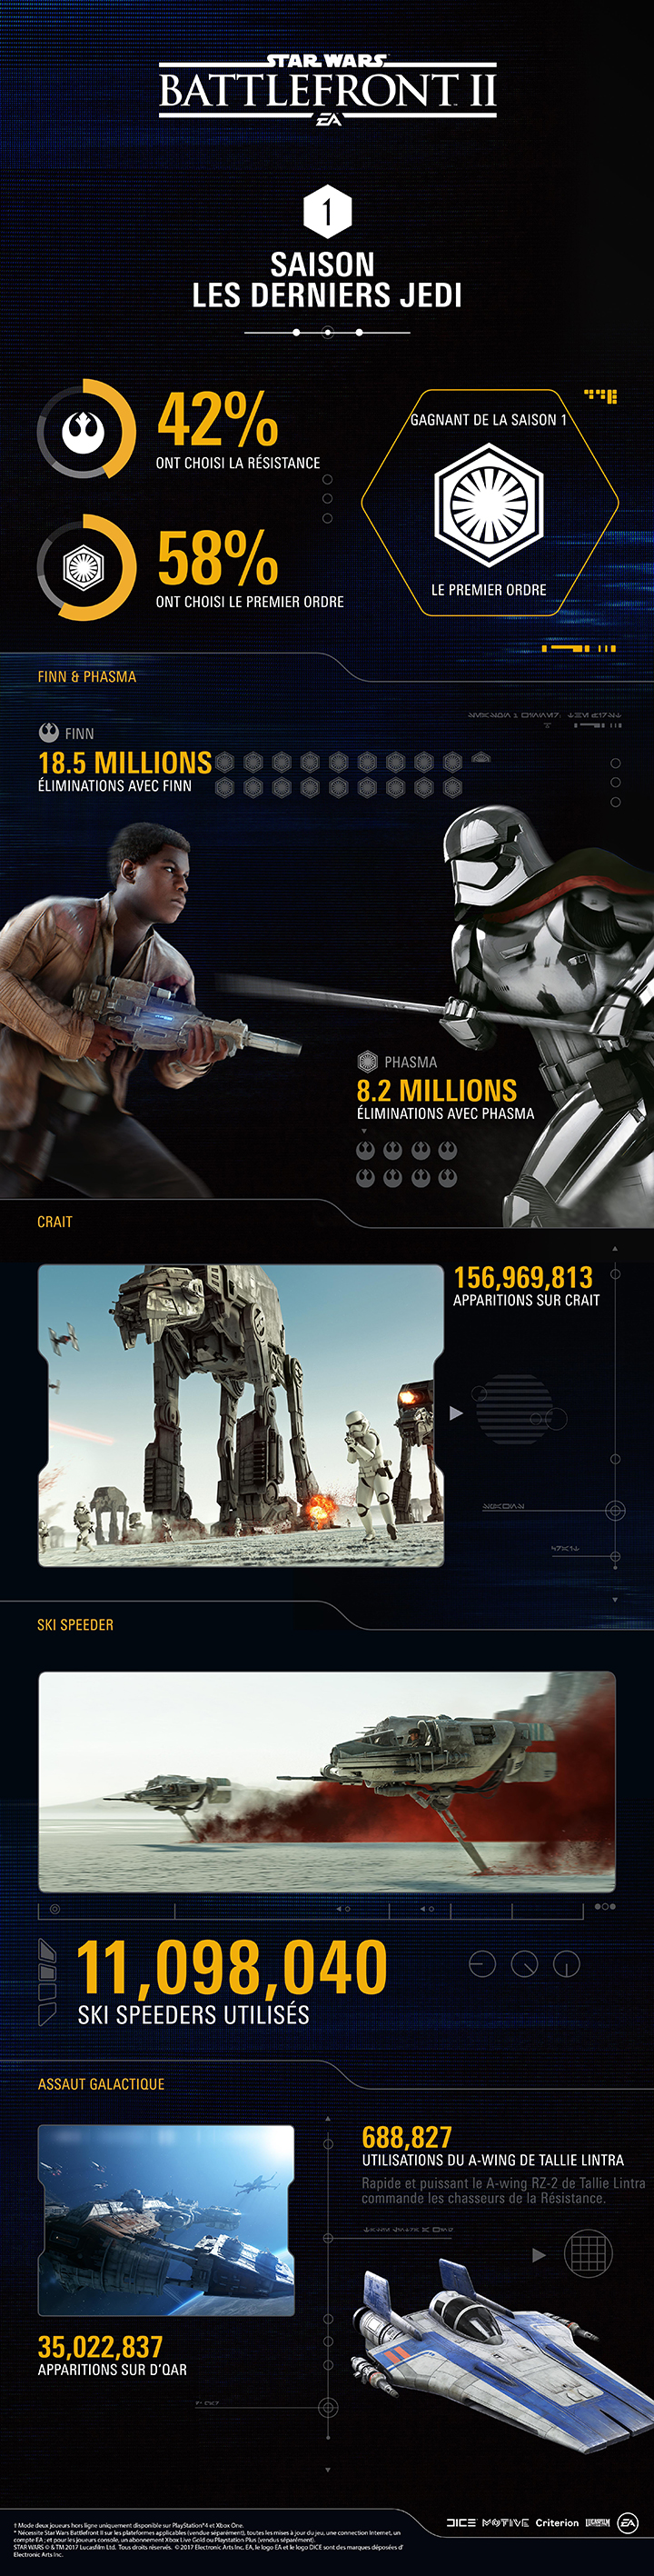 Battlefront II : la première saison Les Derniers Jedi en une infographie